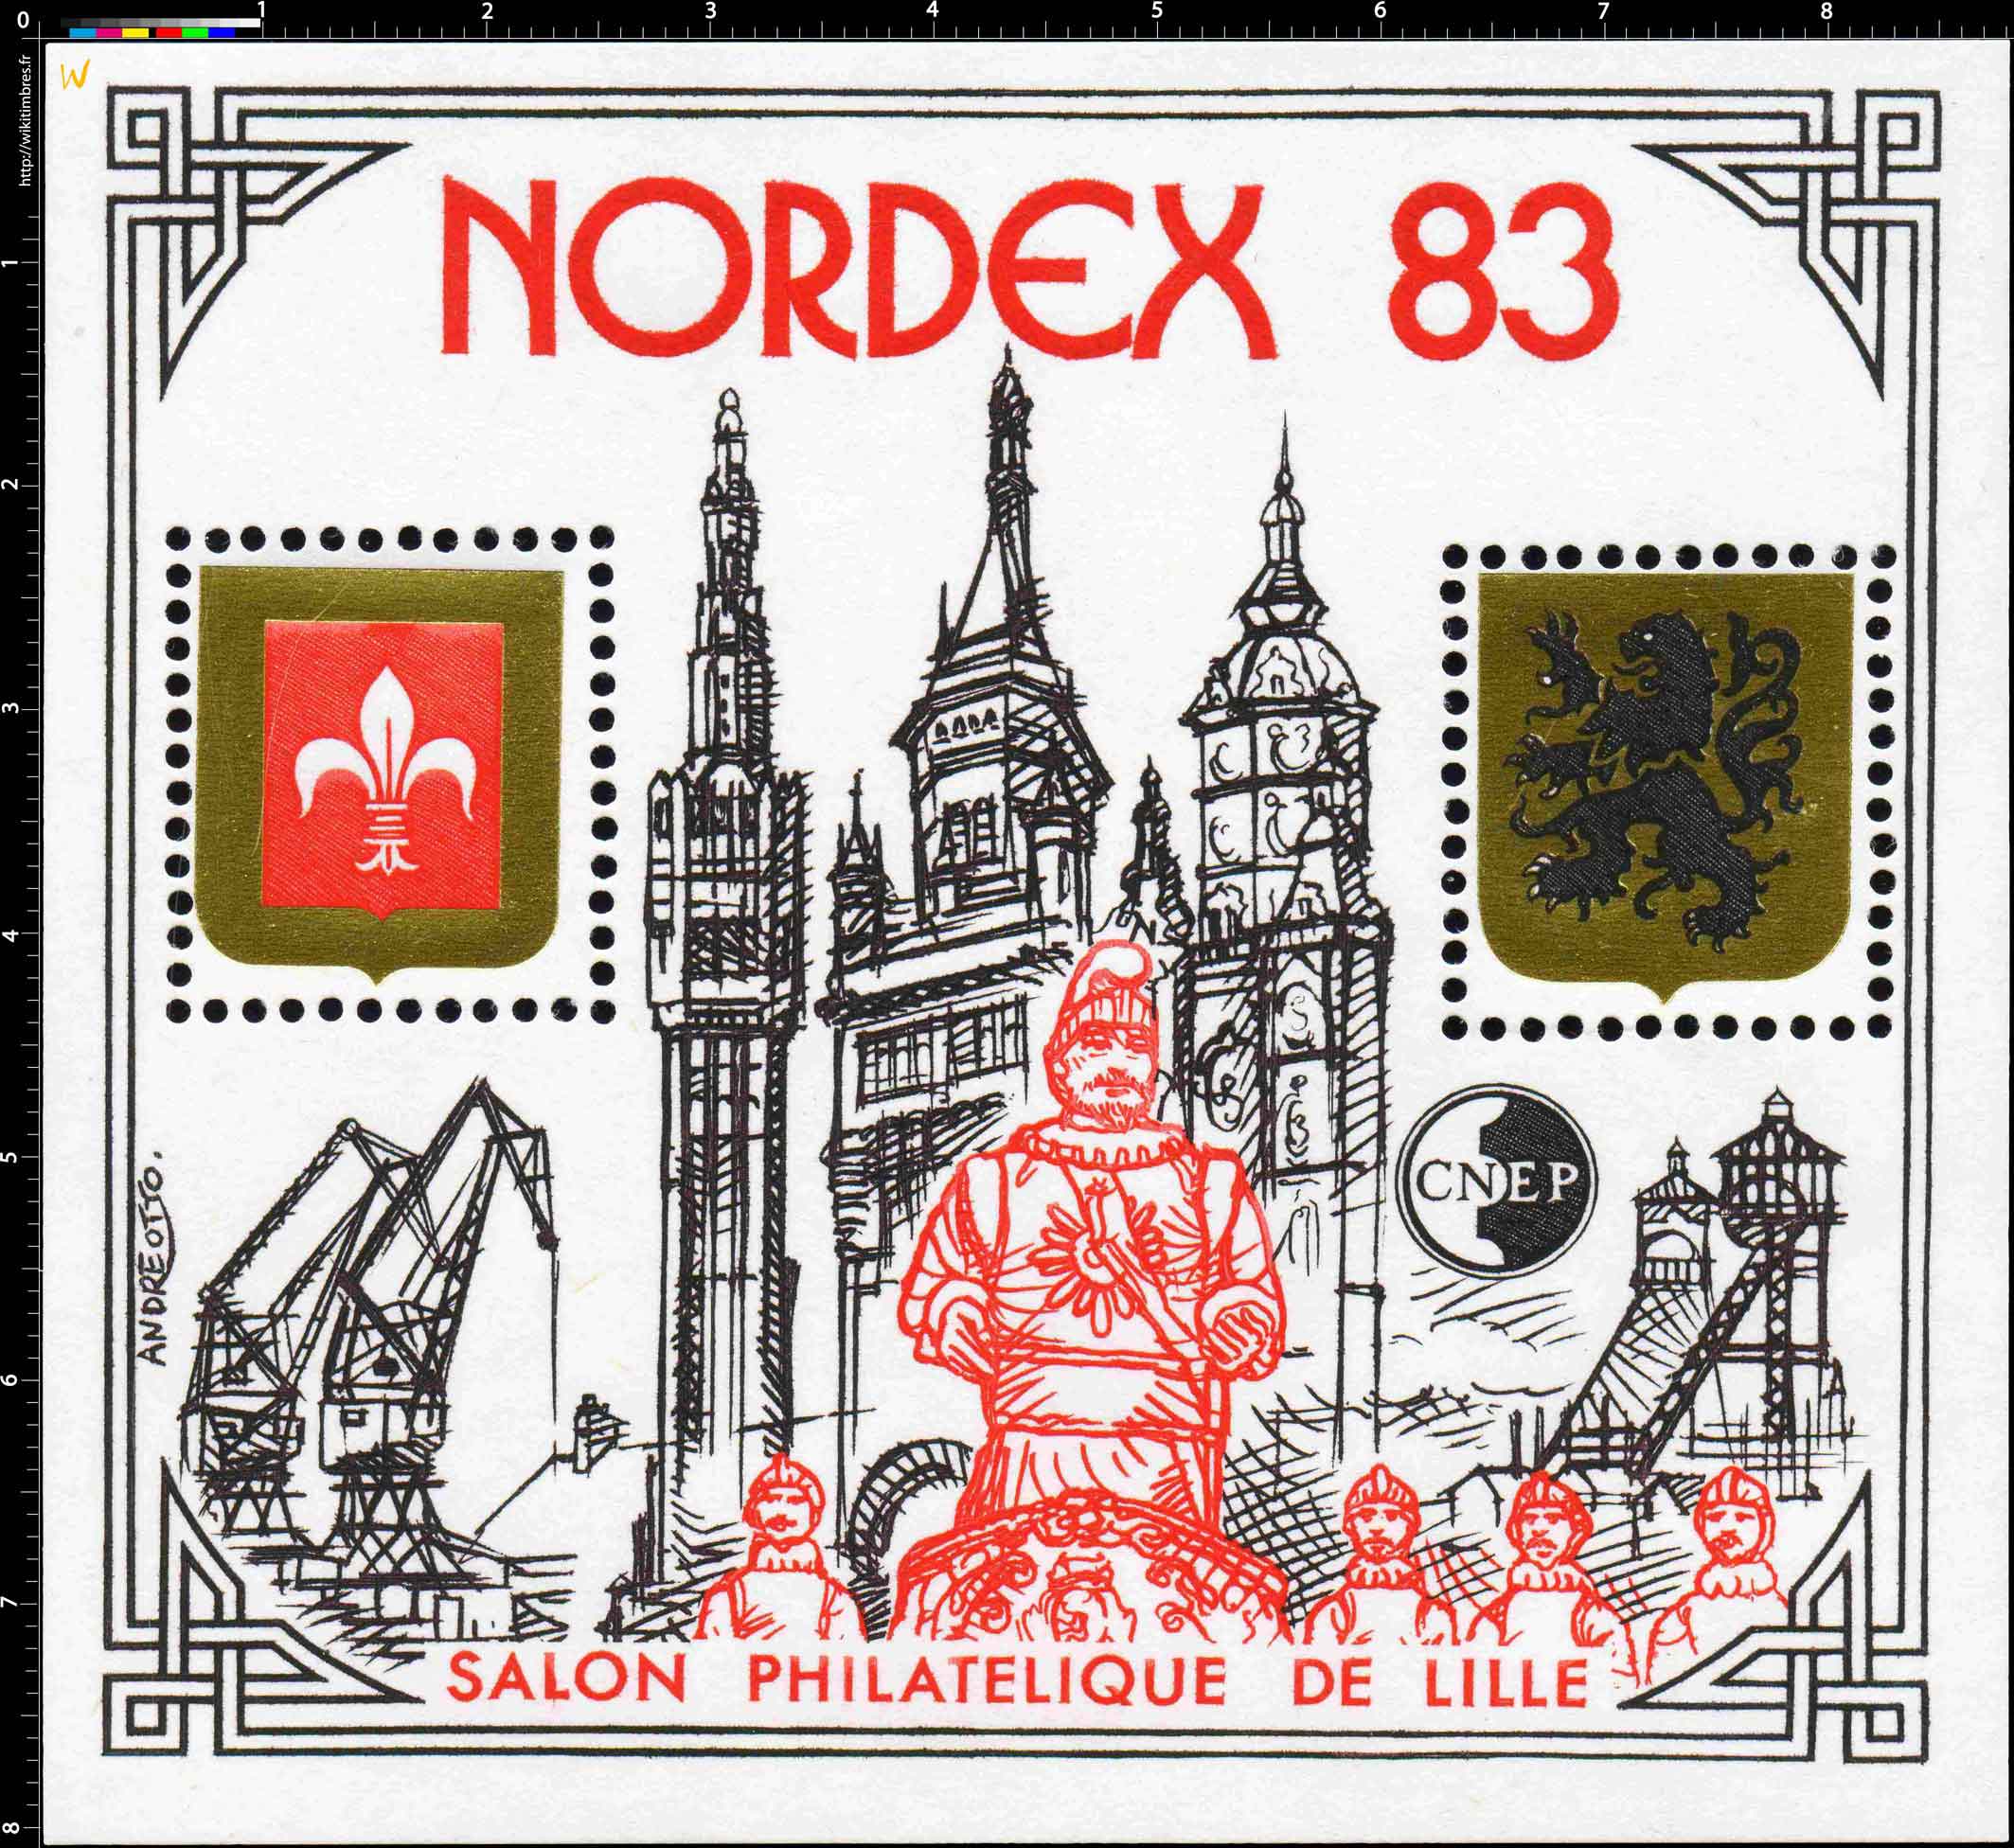 83 NORDEX Salon philatélique de Lille CNEP